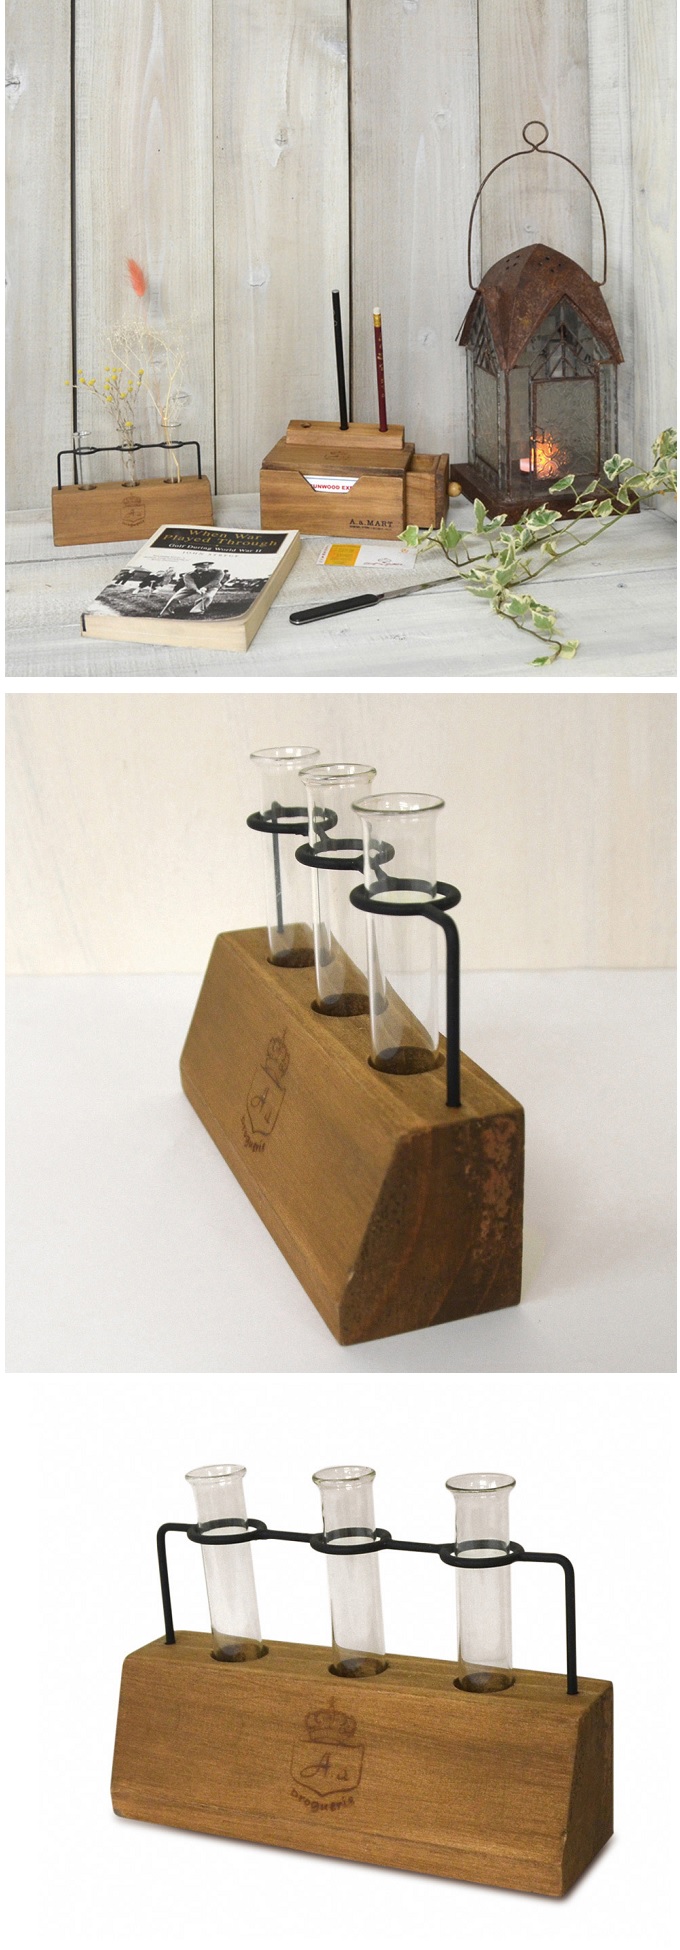 フラワーグラススタンド 木製 ガラス 試験管 一輪挿し おしゃれ フラワーベース 花瓶